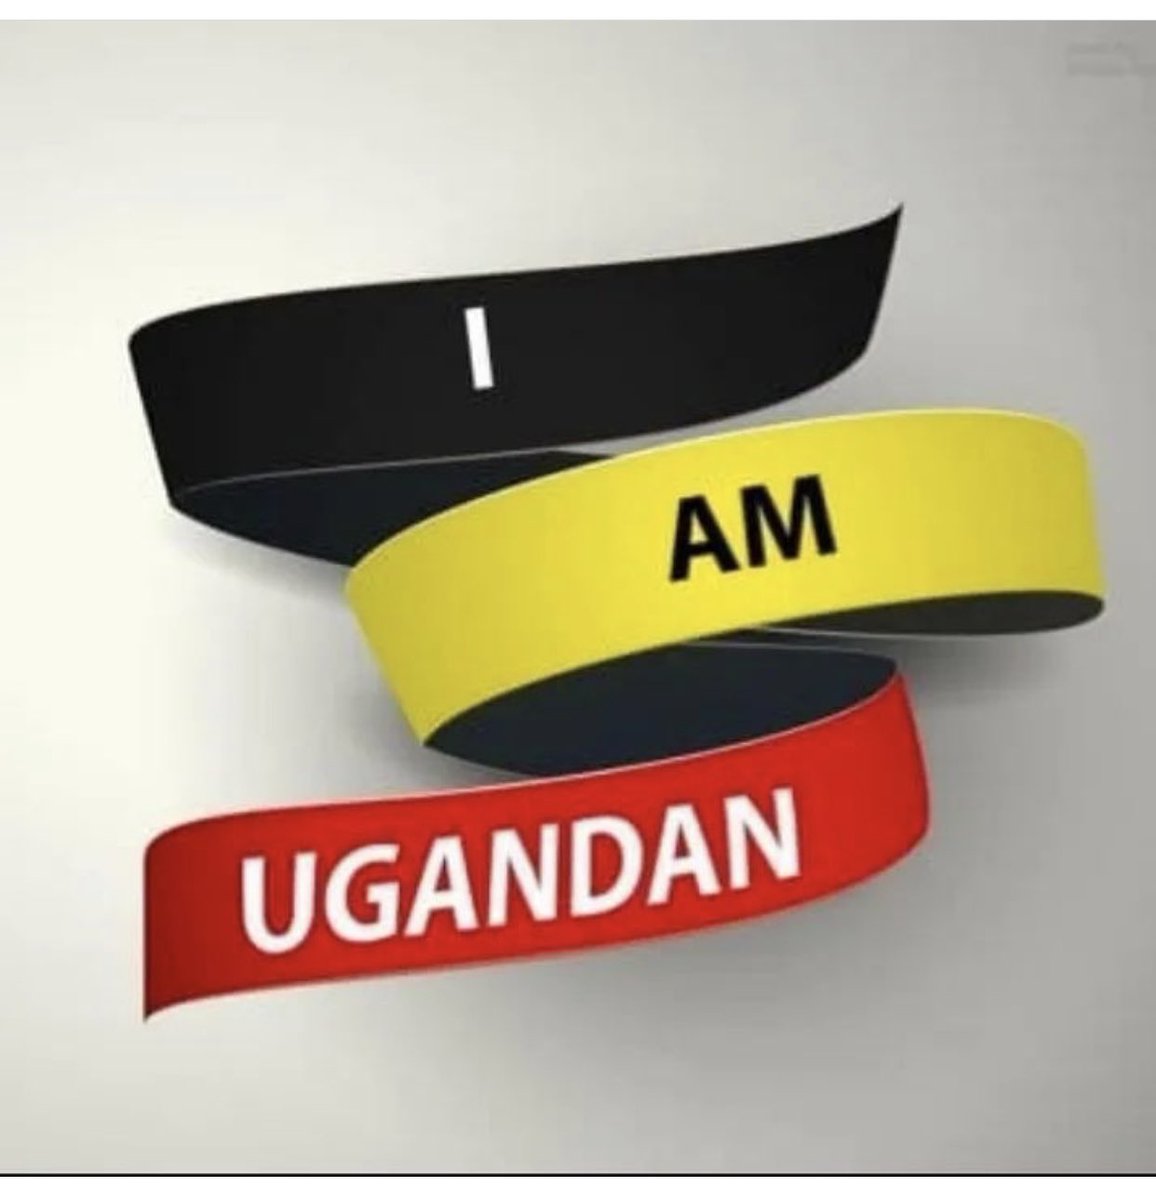 We aim at Promoting the 
#BeautiesOfUganda❤️ to greater heights.

#VisitUganda
#ExploreUganda
#TulambuleUganda